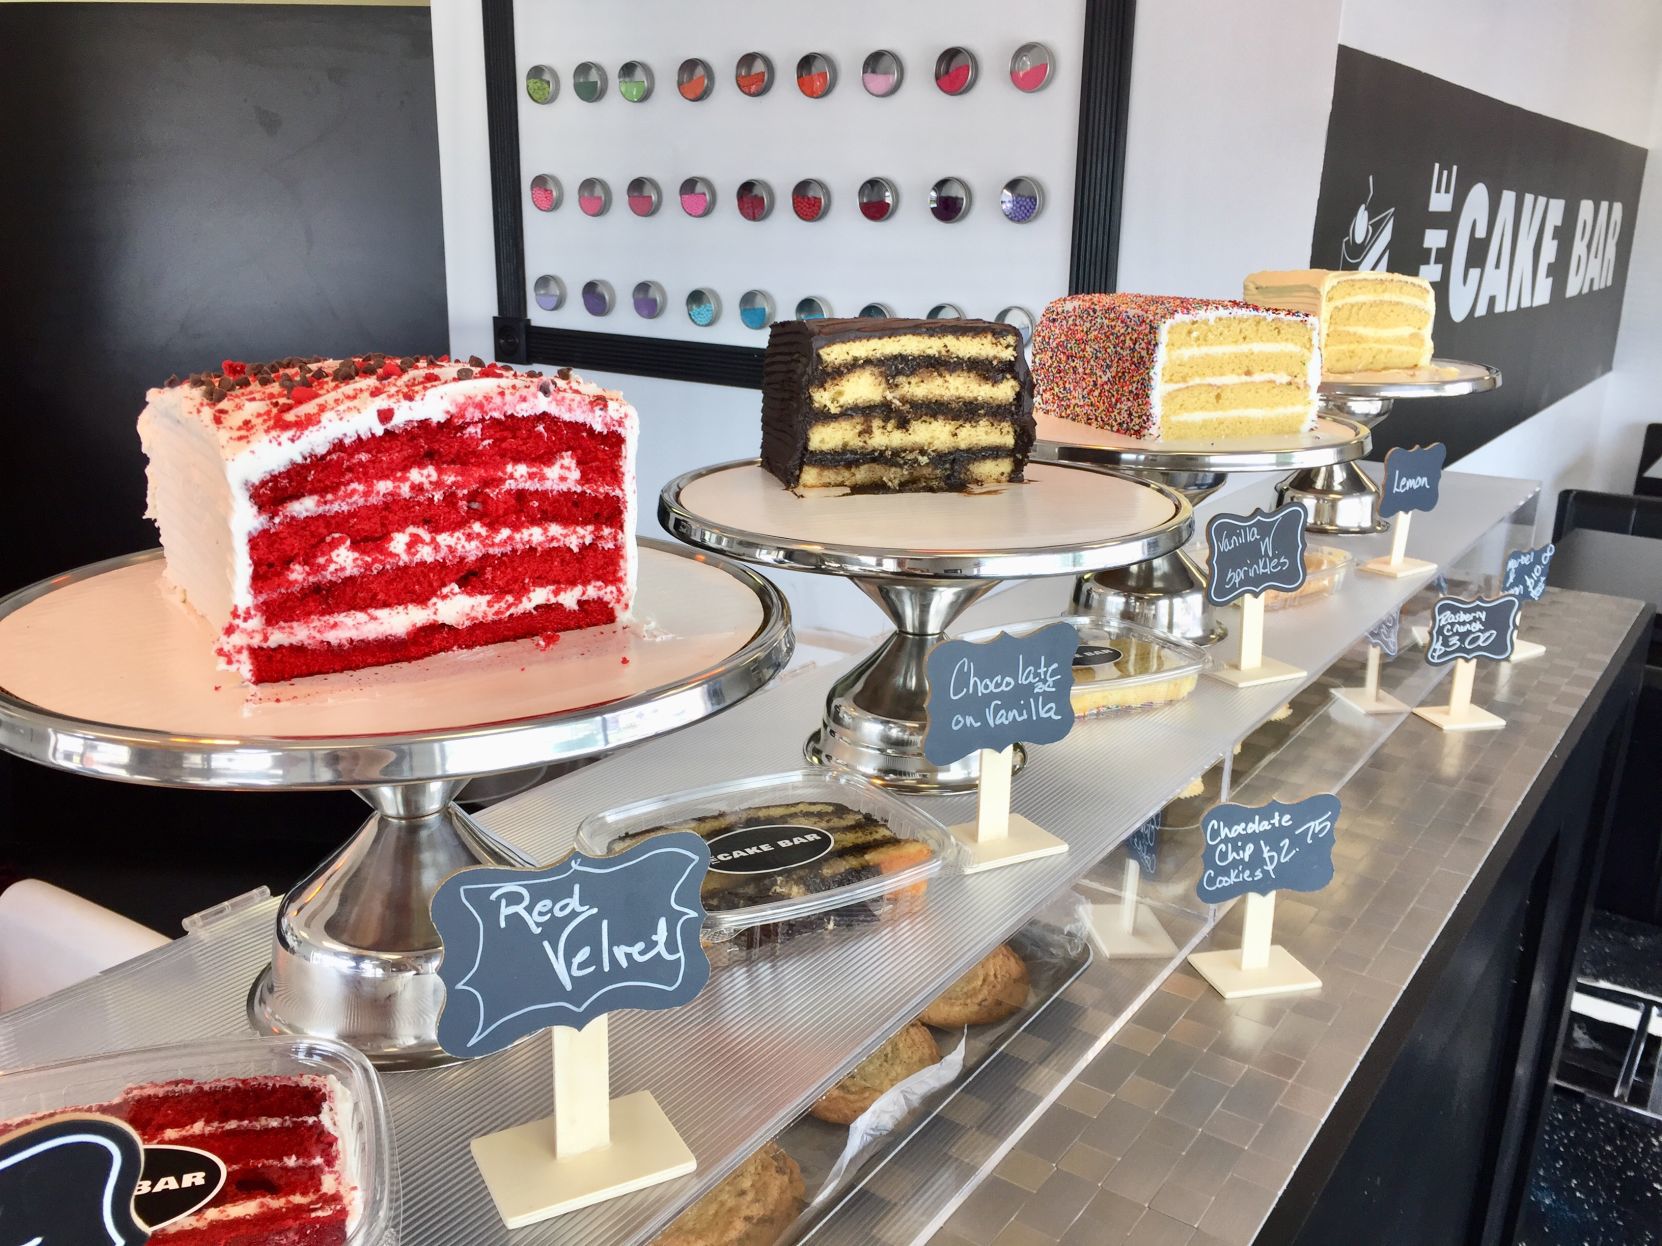 Yummy Cakes - Cake Bar Choco 50g x 24 | Shop Today. Get it Tomorrow! |  takealot.com